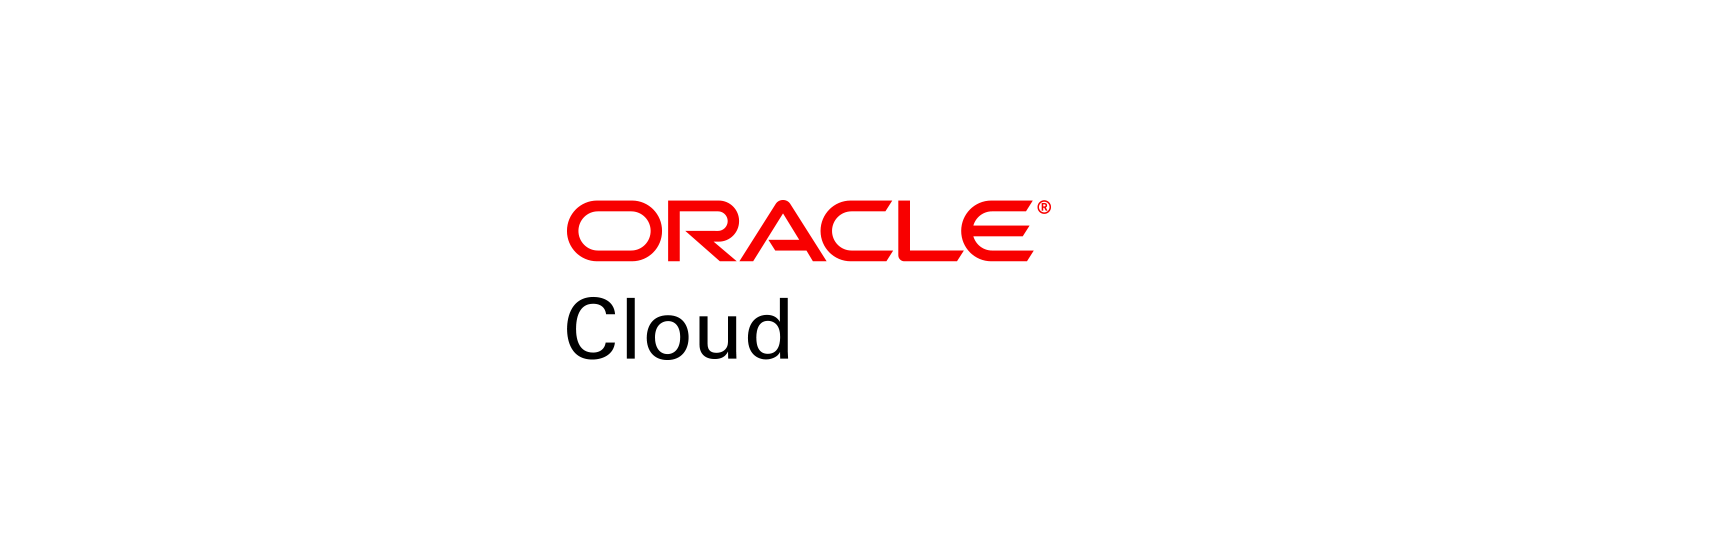 Google Oracle Logo - Oracle Brand | Logos